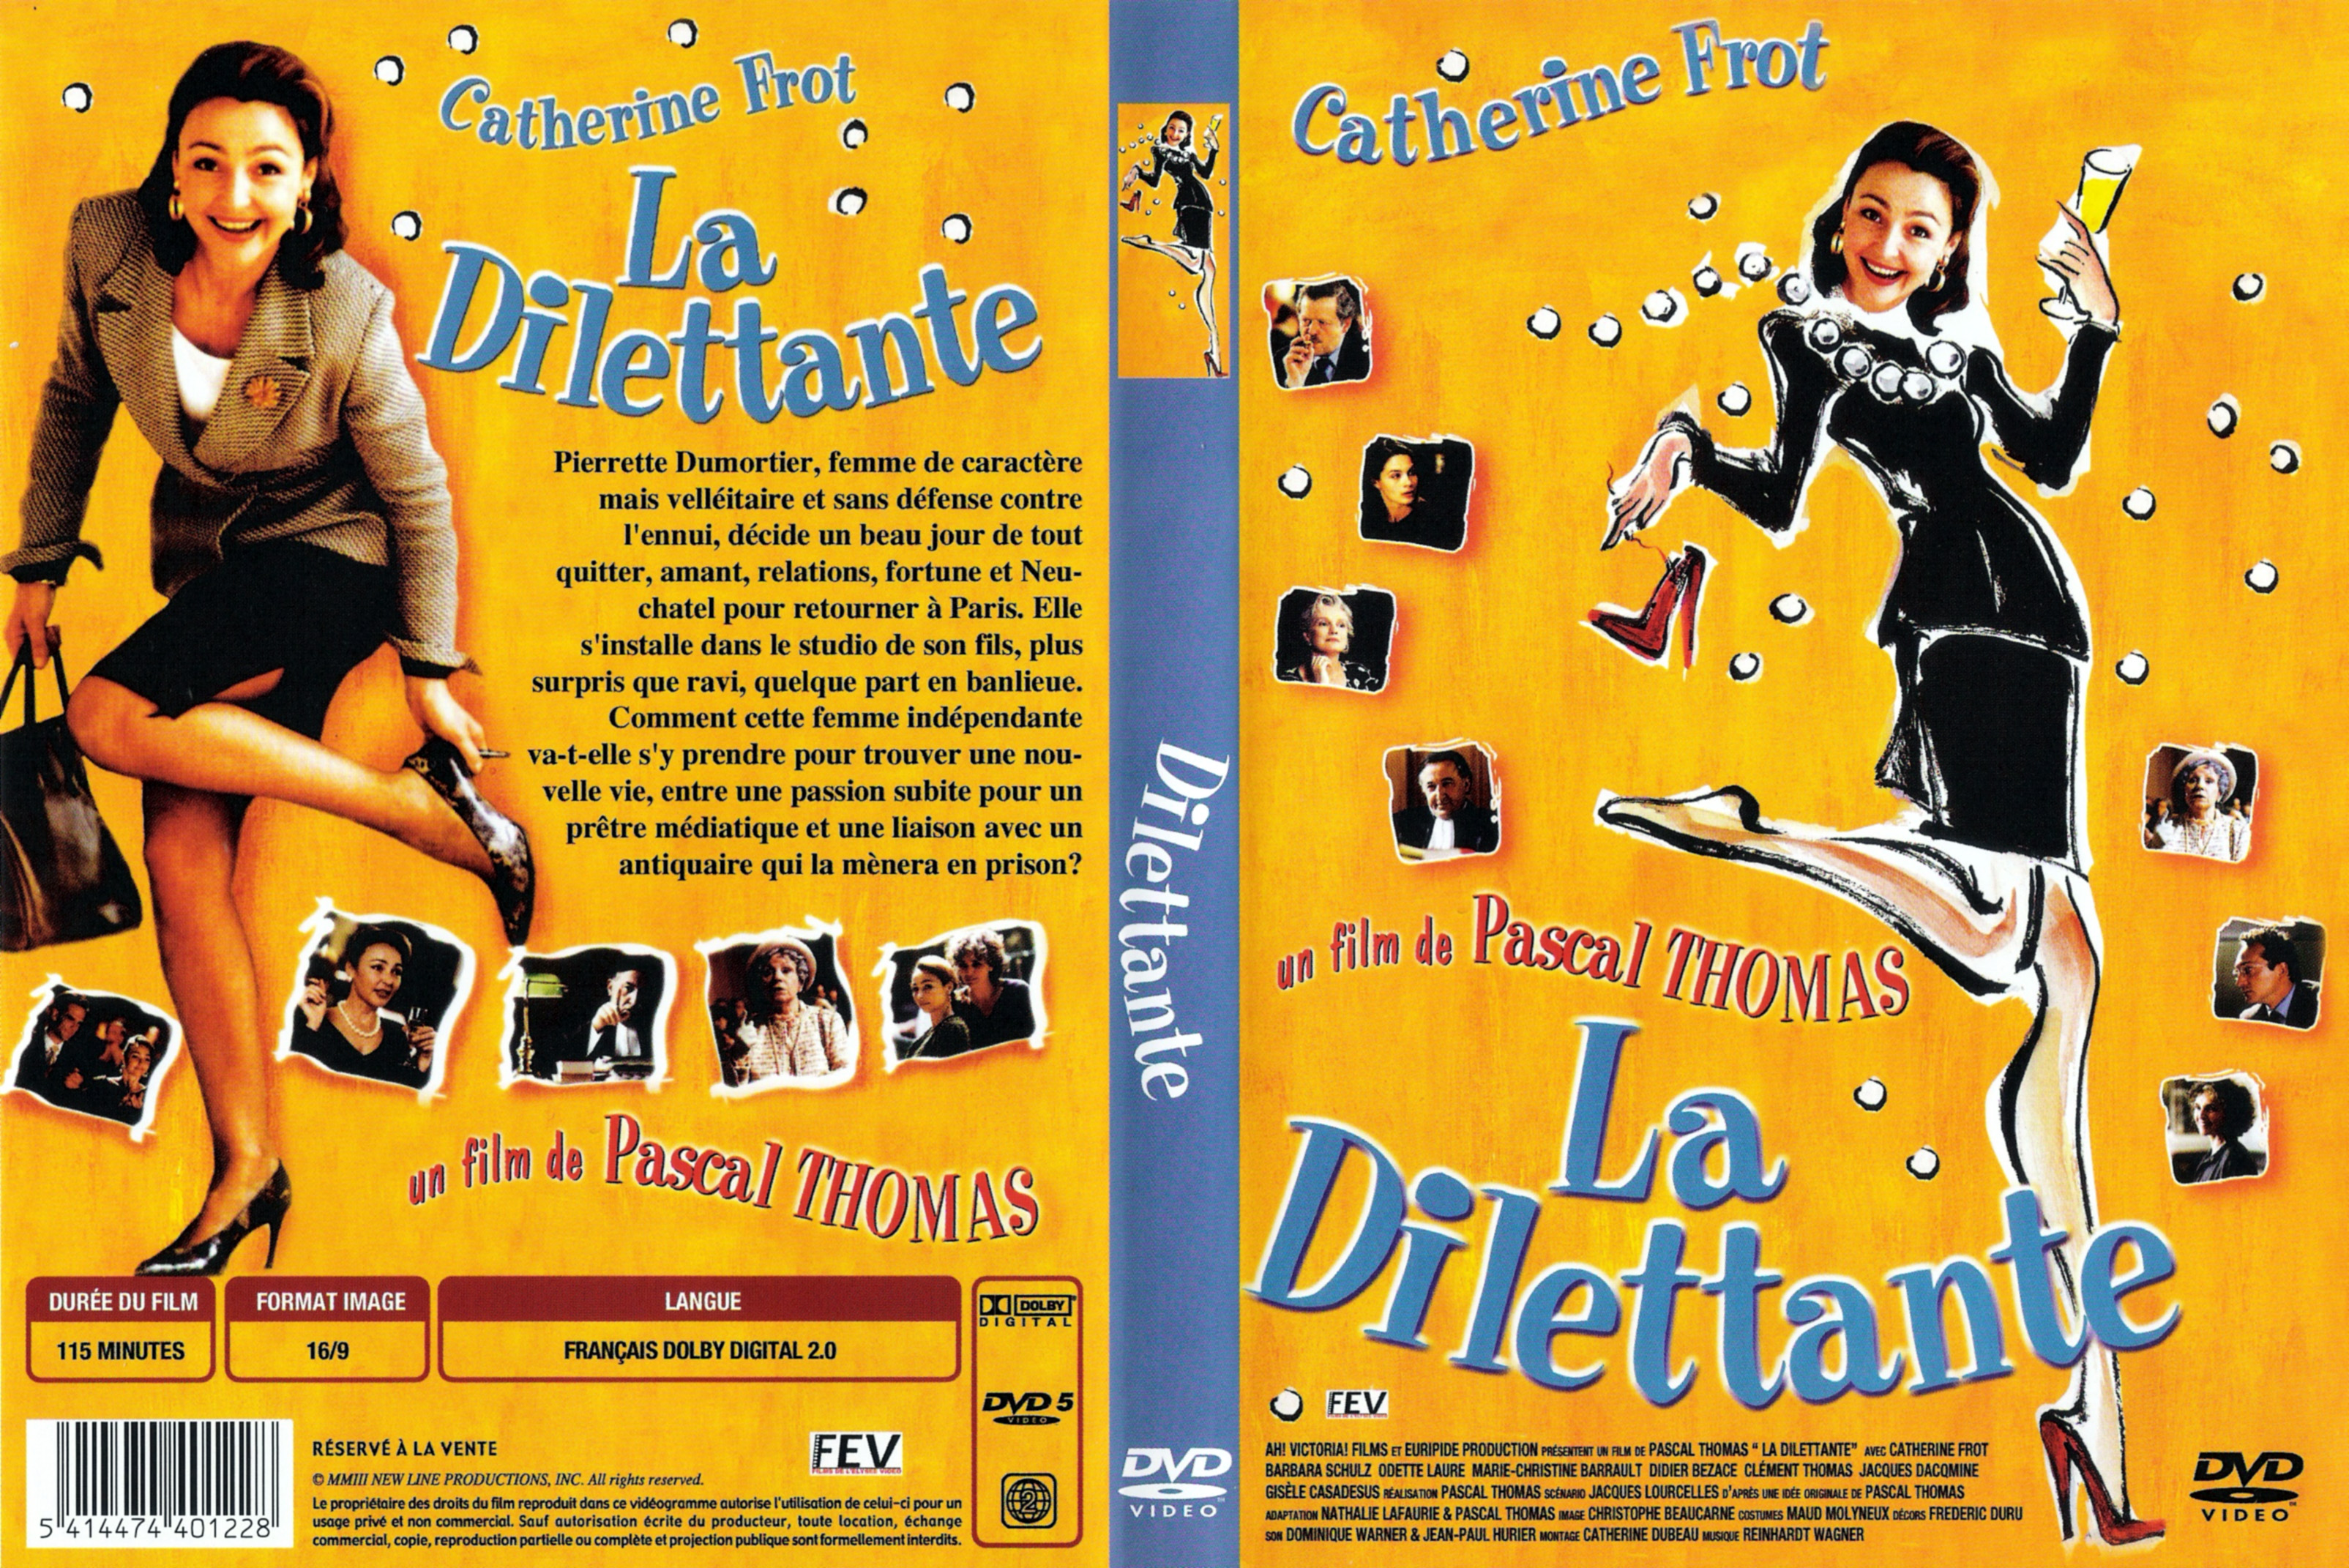 Jaquette DVD La dilettante v2